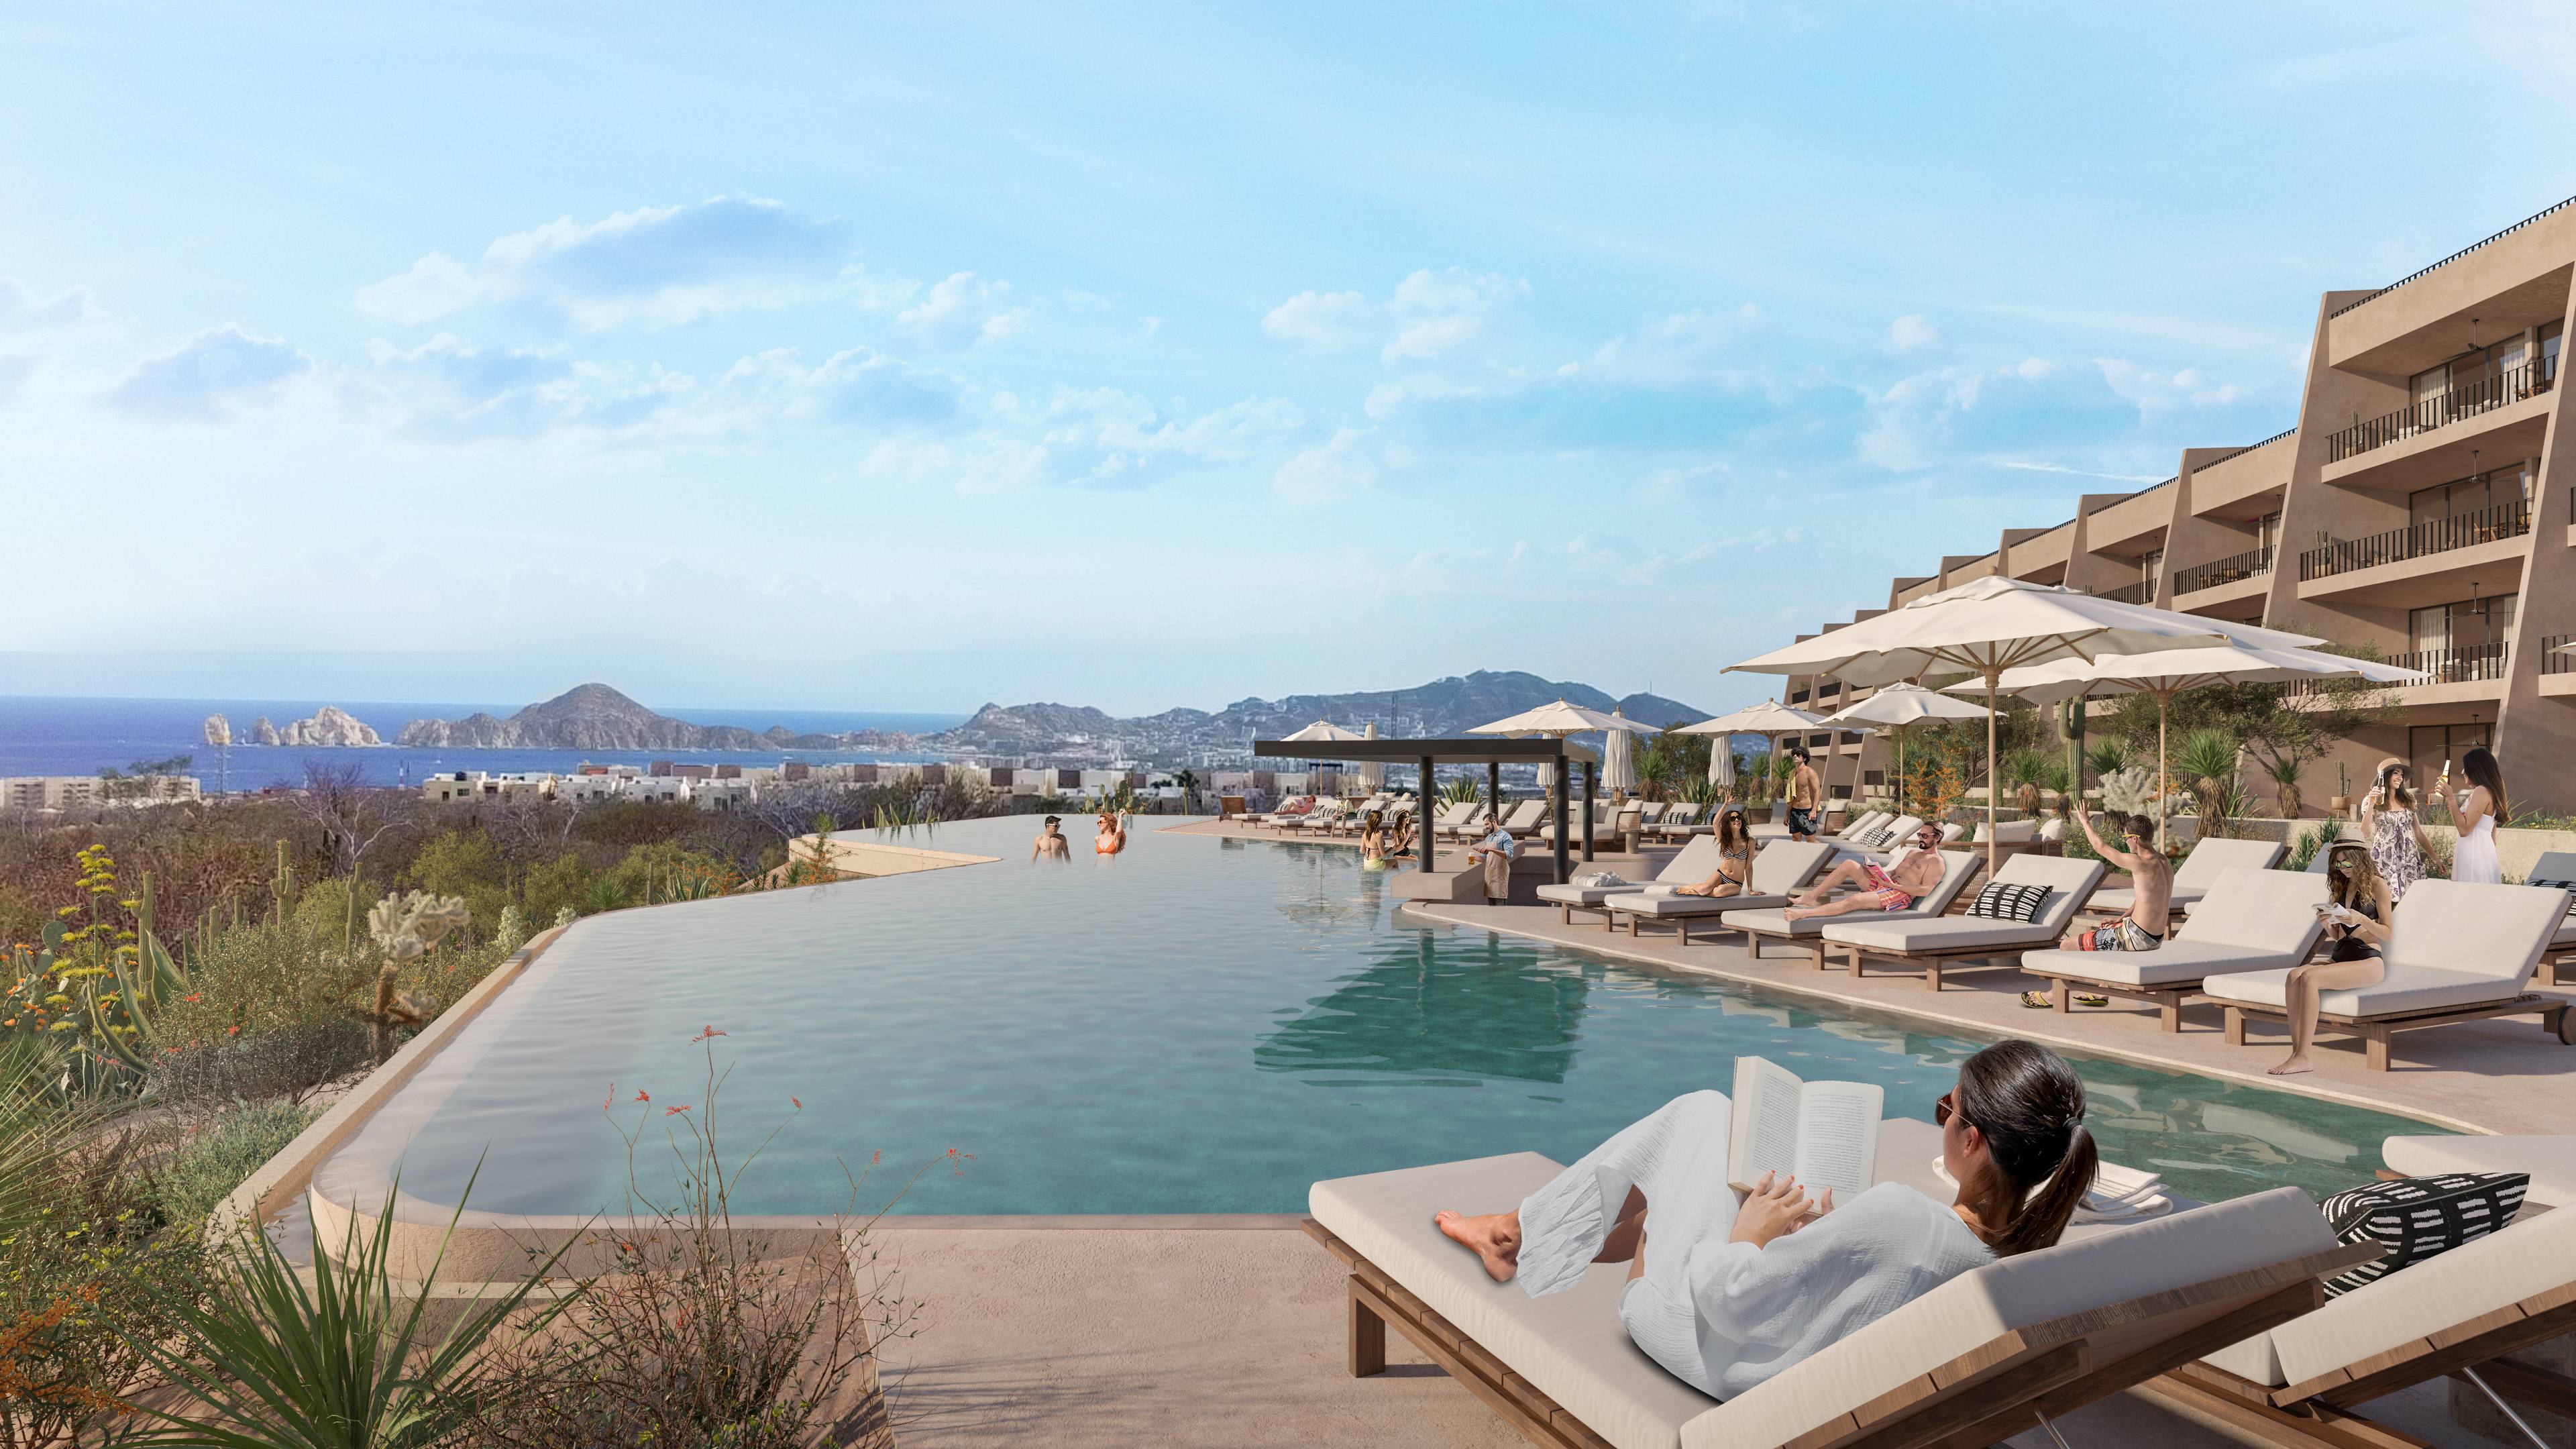 Condo Monte Rocella,Discover Serenity and Luxury in Los Cabos  Exclusive Condos with Unmatched Views